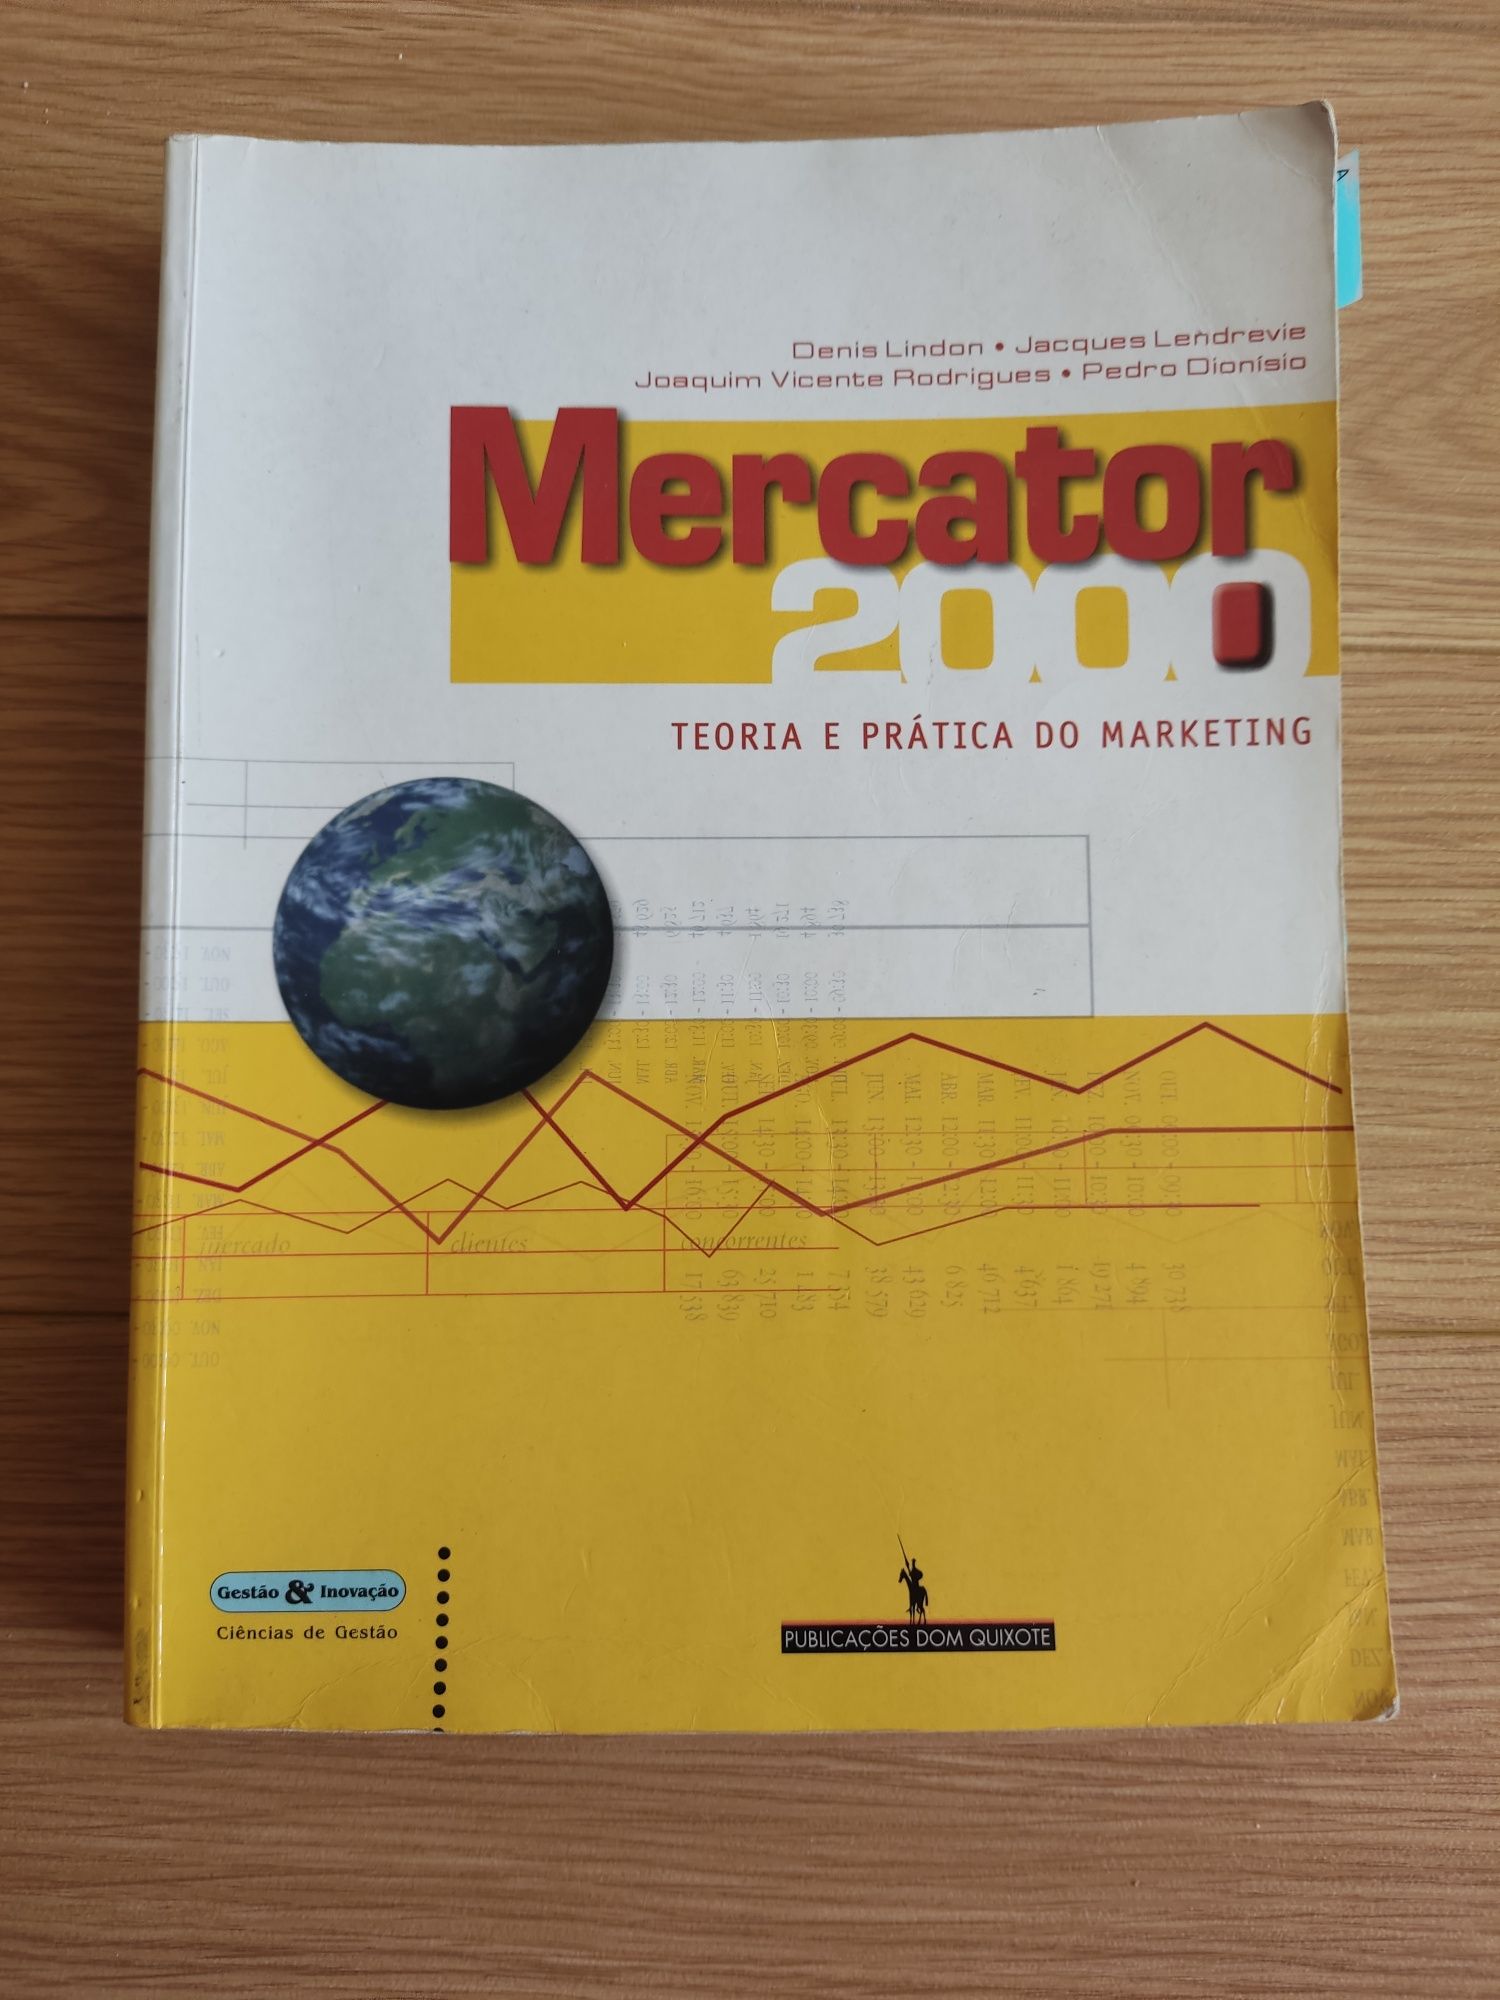 Mercator 2000 - inclui portes em correio editorial